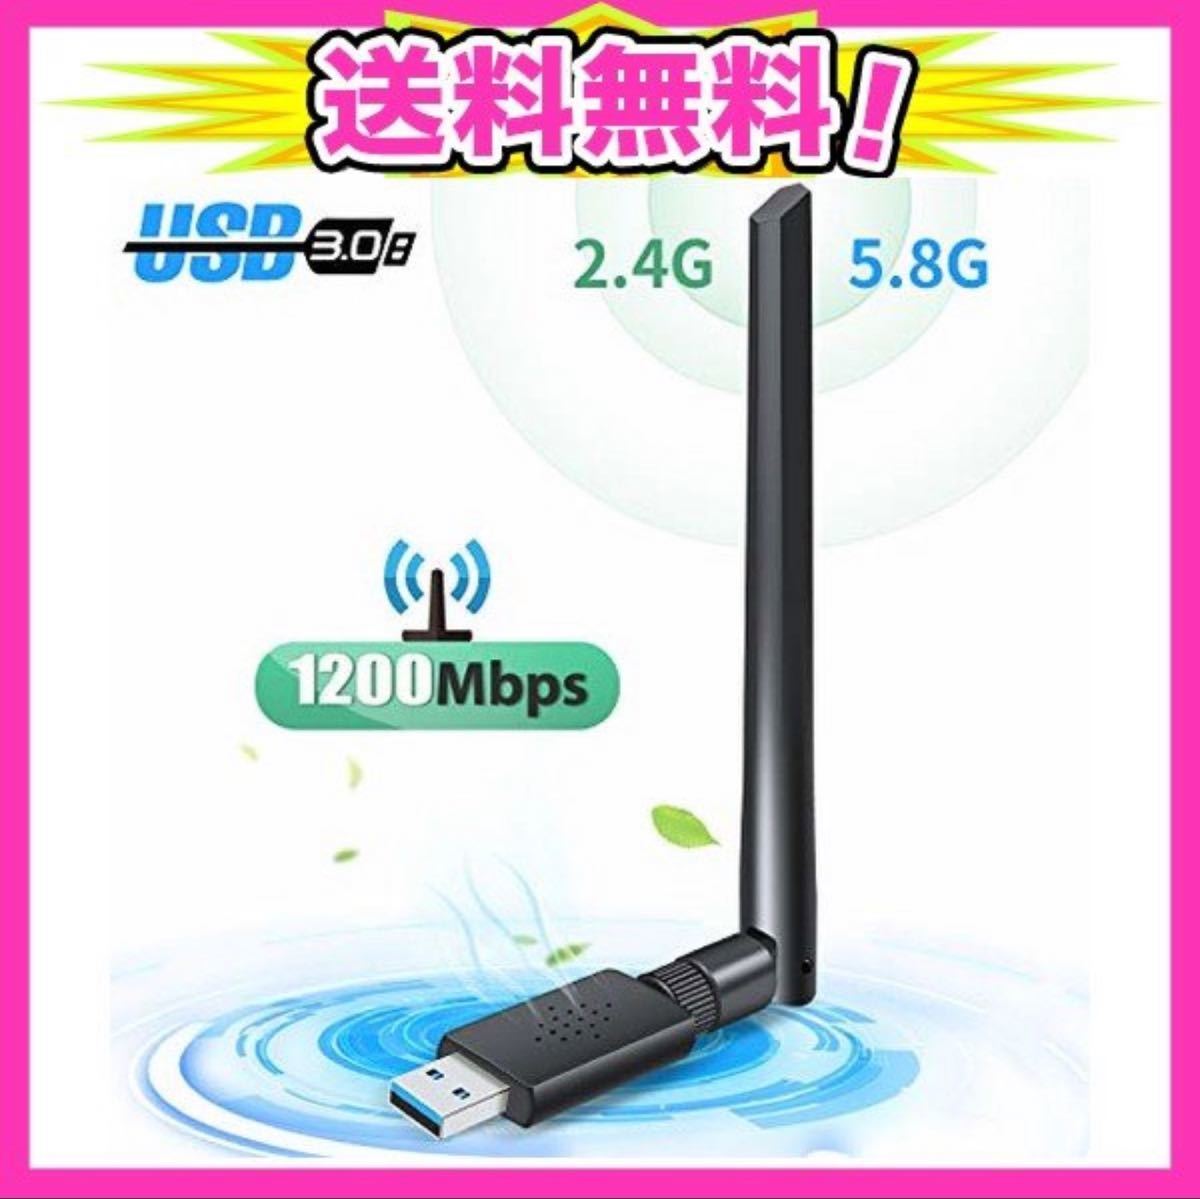 【新品】Wi-Fi無線LAN 子機 1200Mbps 放熱デザイン 高速度 5dBi用 デュアルタイプ